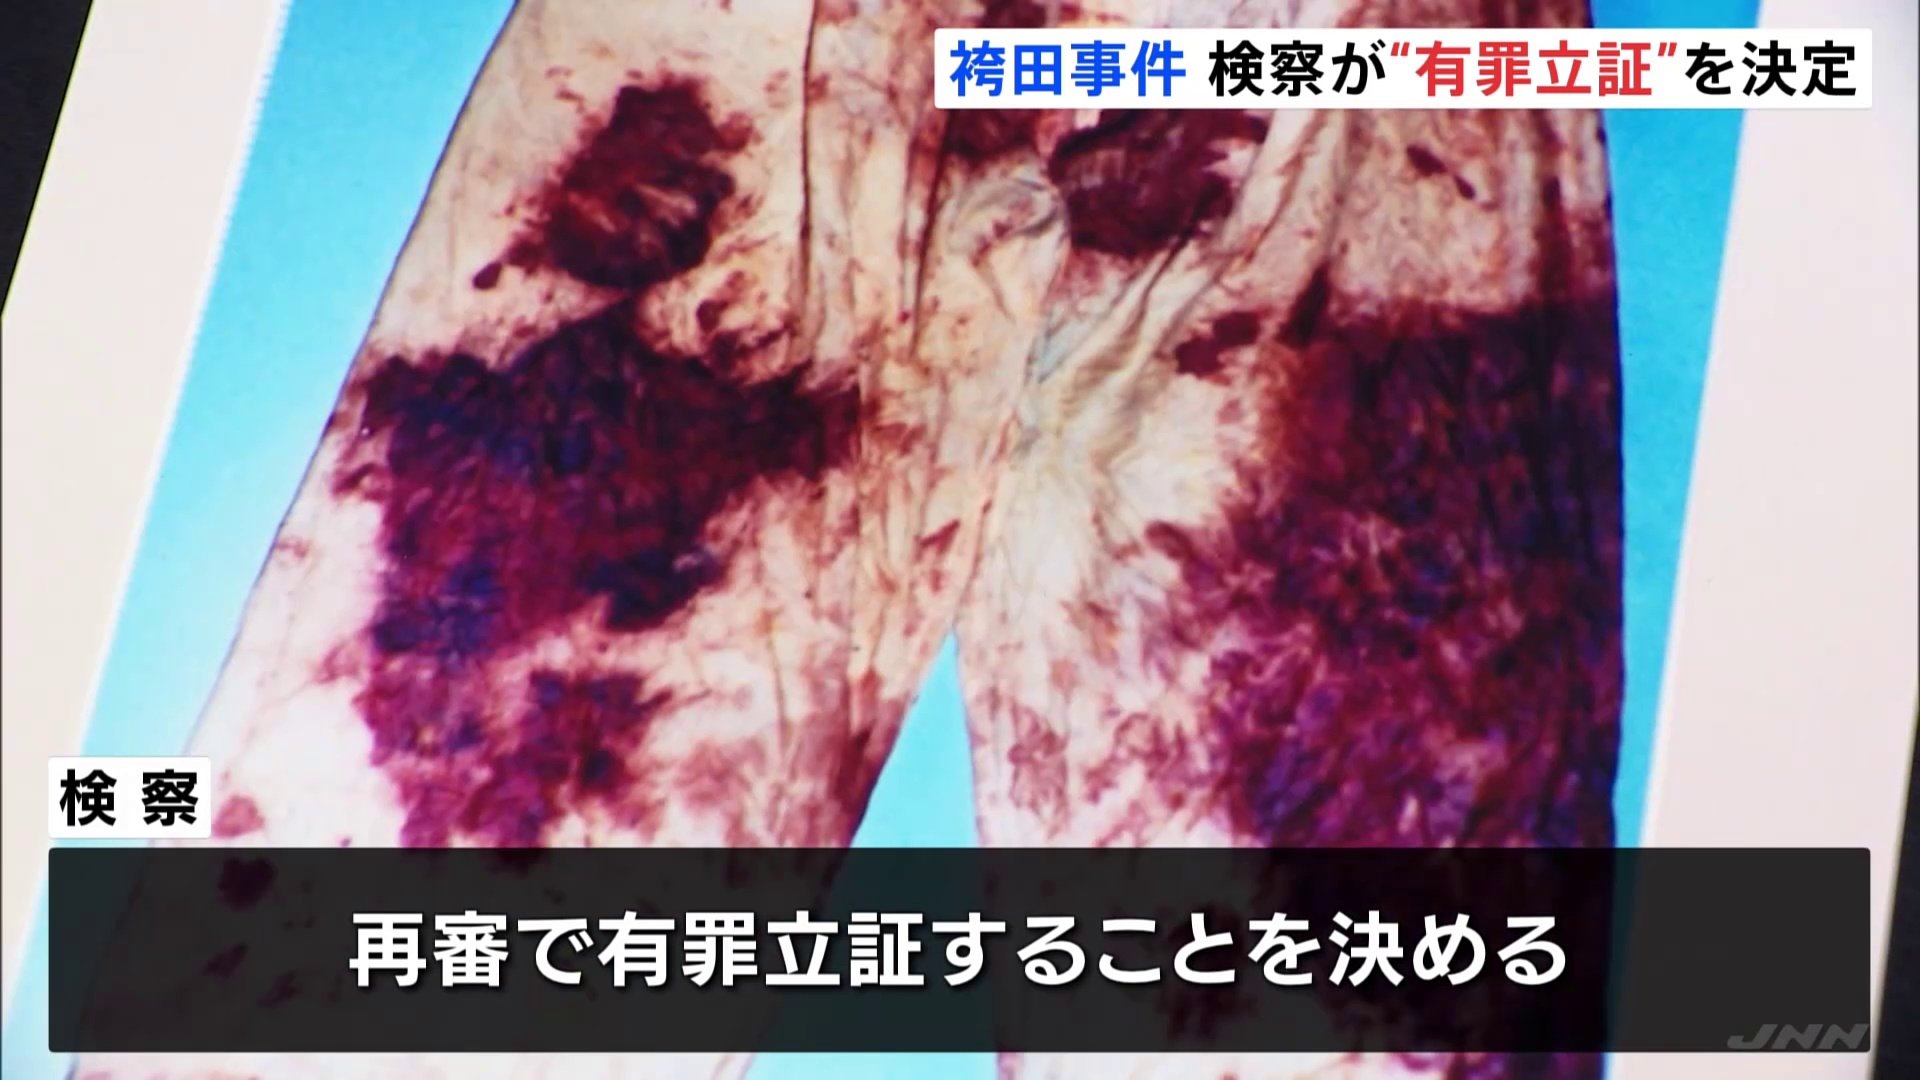 袴田事件　検察が再審公判で有罪の立証方針を決める　証拠の衣類「ねつ造」の指摘に「根拠がない」